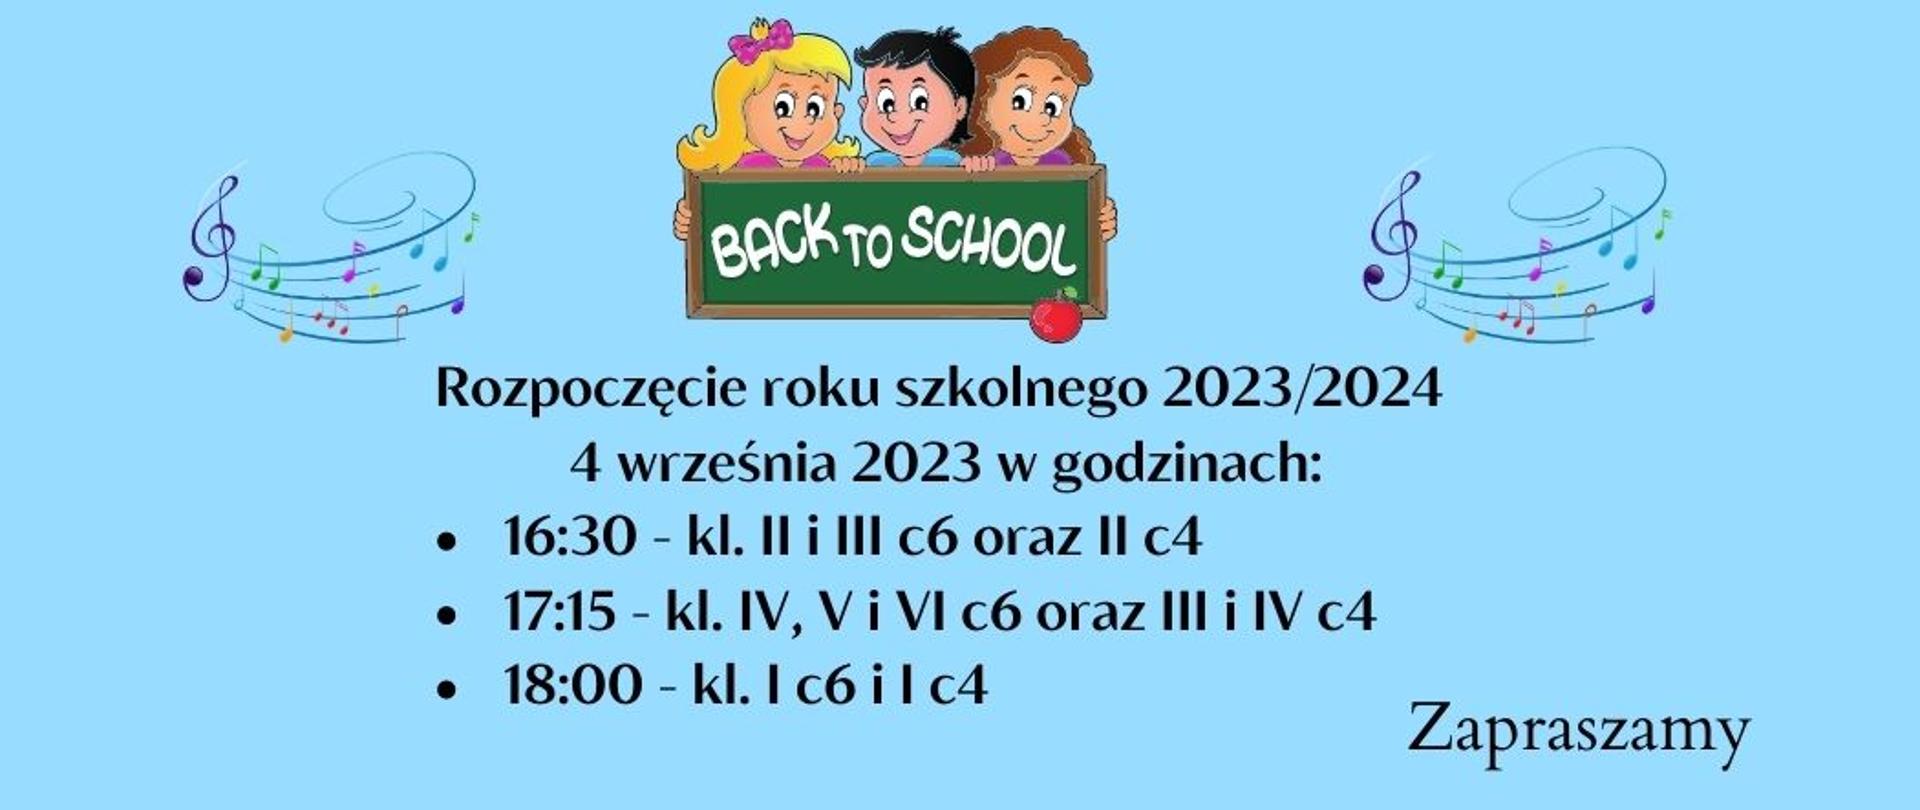 Grafika przedstawia na niebieskim tle kolorowe nutki oraz napis z informacją o godzinie rozpoczęcia roku szkolnego 2023/2024. W górnej części dzieci trzymające tablicę z napisem "Back to school".